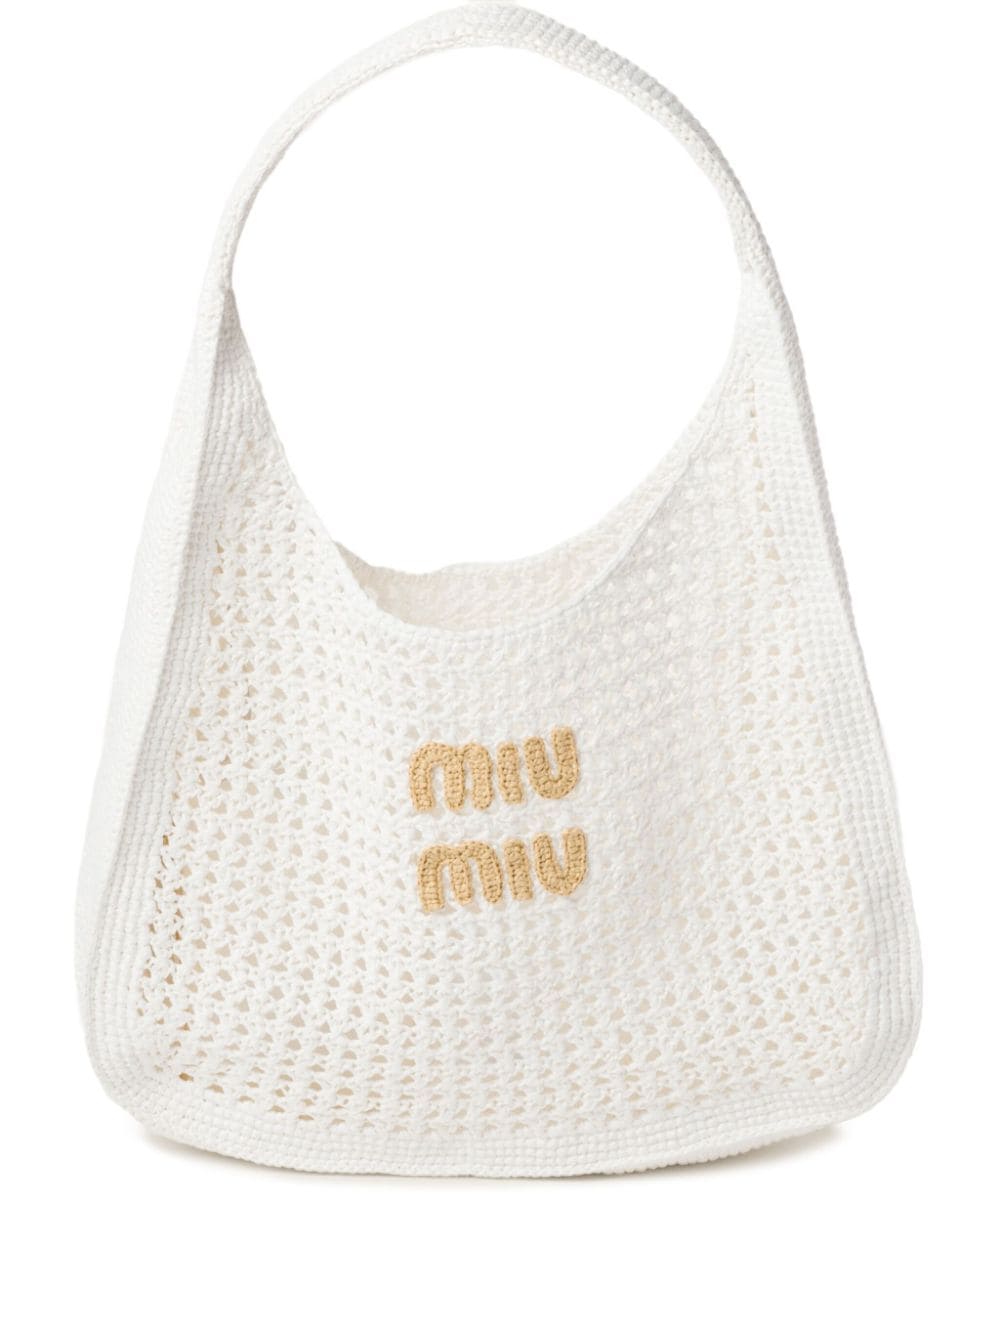 Miu Miu crochet-knit handbag - White von Miu Miu